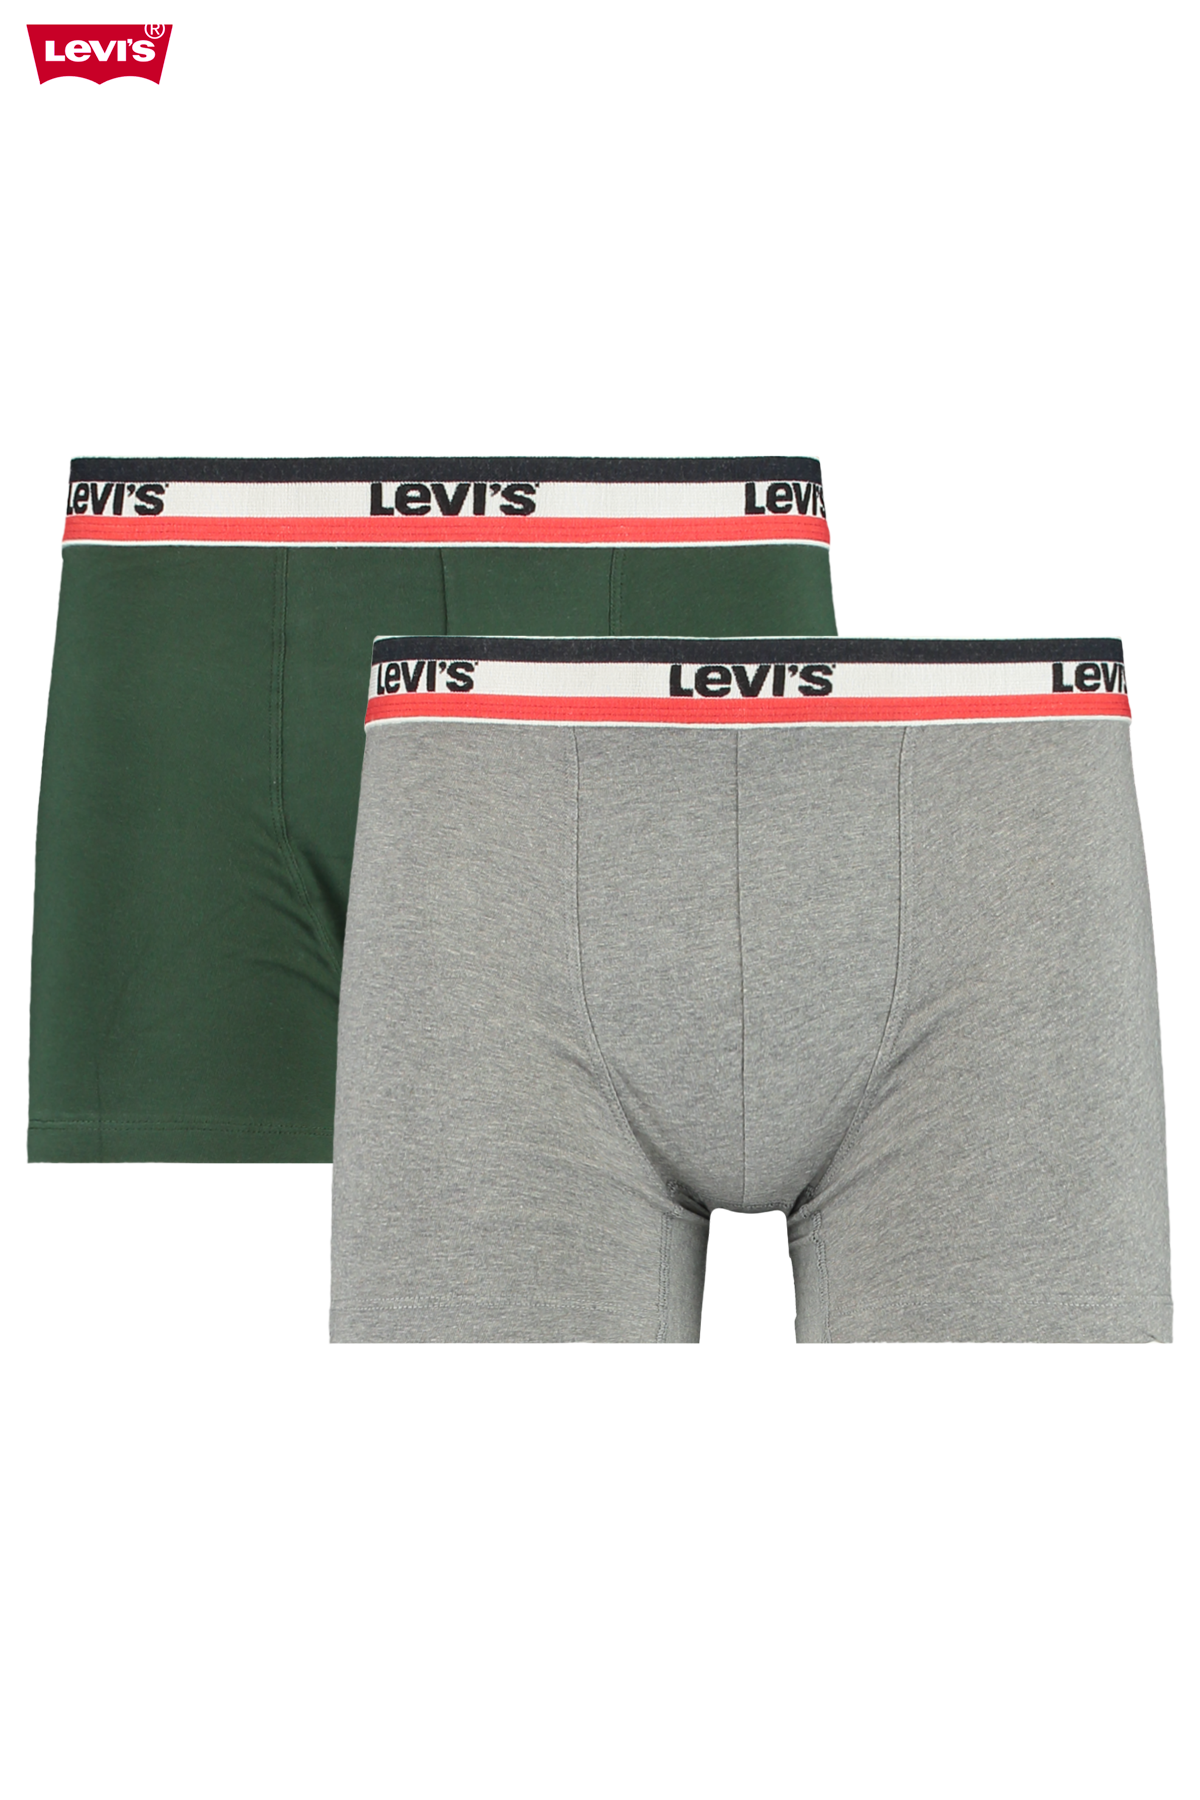 levis underwear online